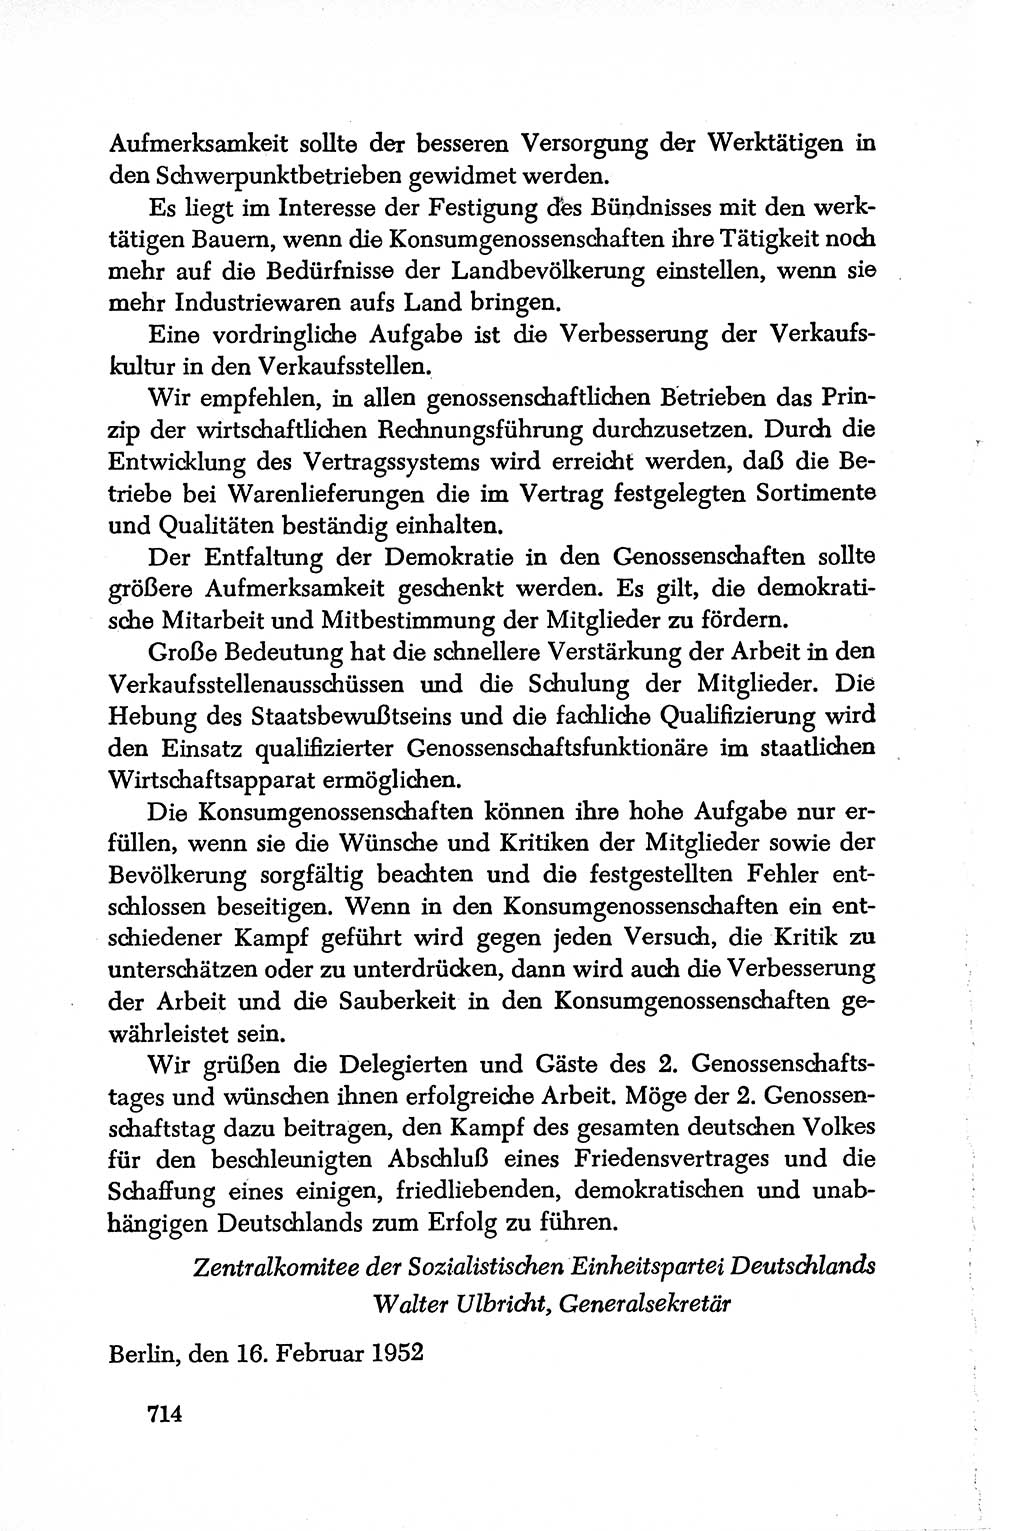 Dokumente der Sozialistischen Einheitspartei Deutschlands (SED) [Deutsche Demokratische Republik (DDR)] 1950-1952, Seite 714 (Dok. SED DDR 1950-1952, S. 714)